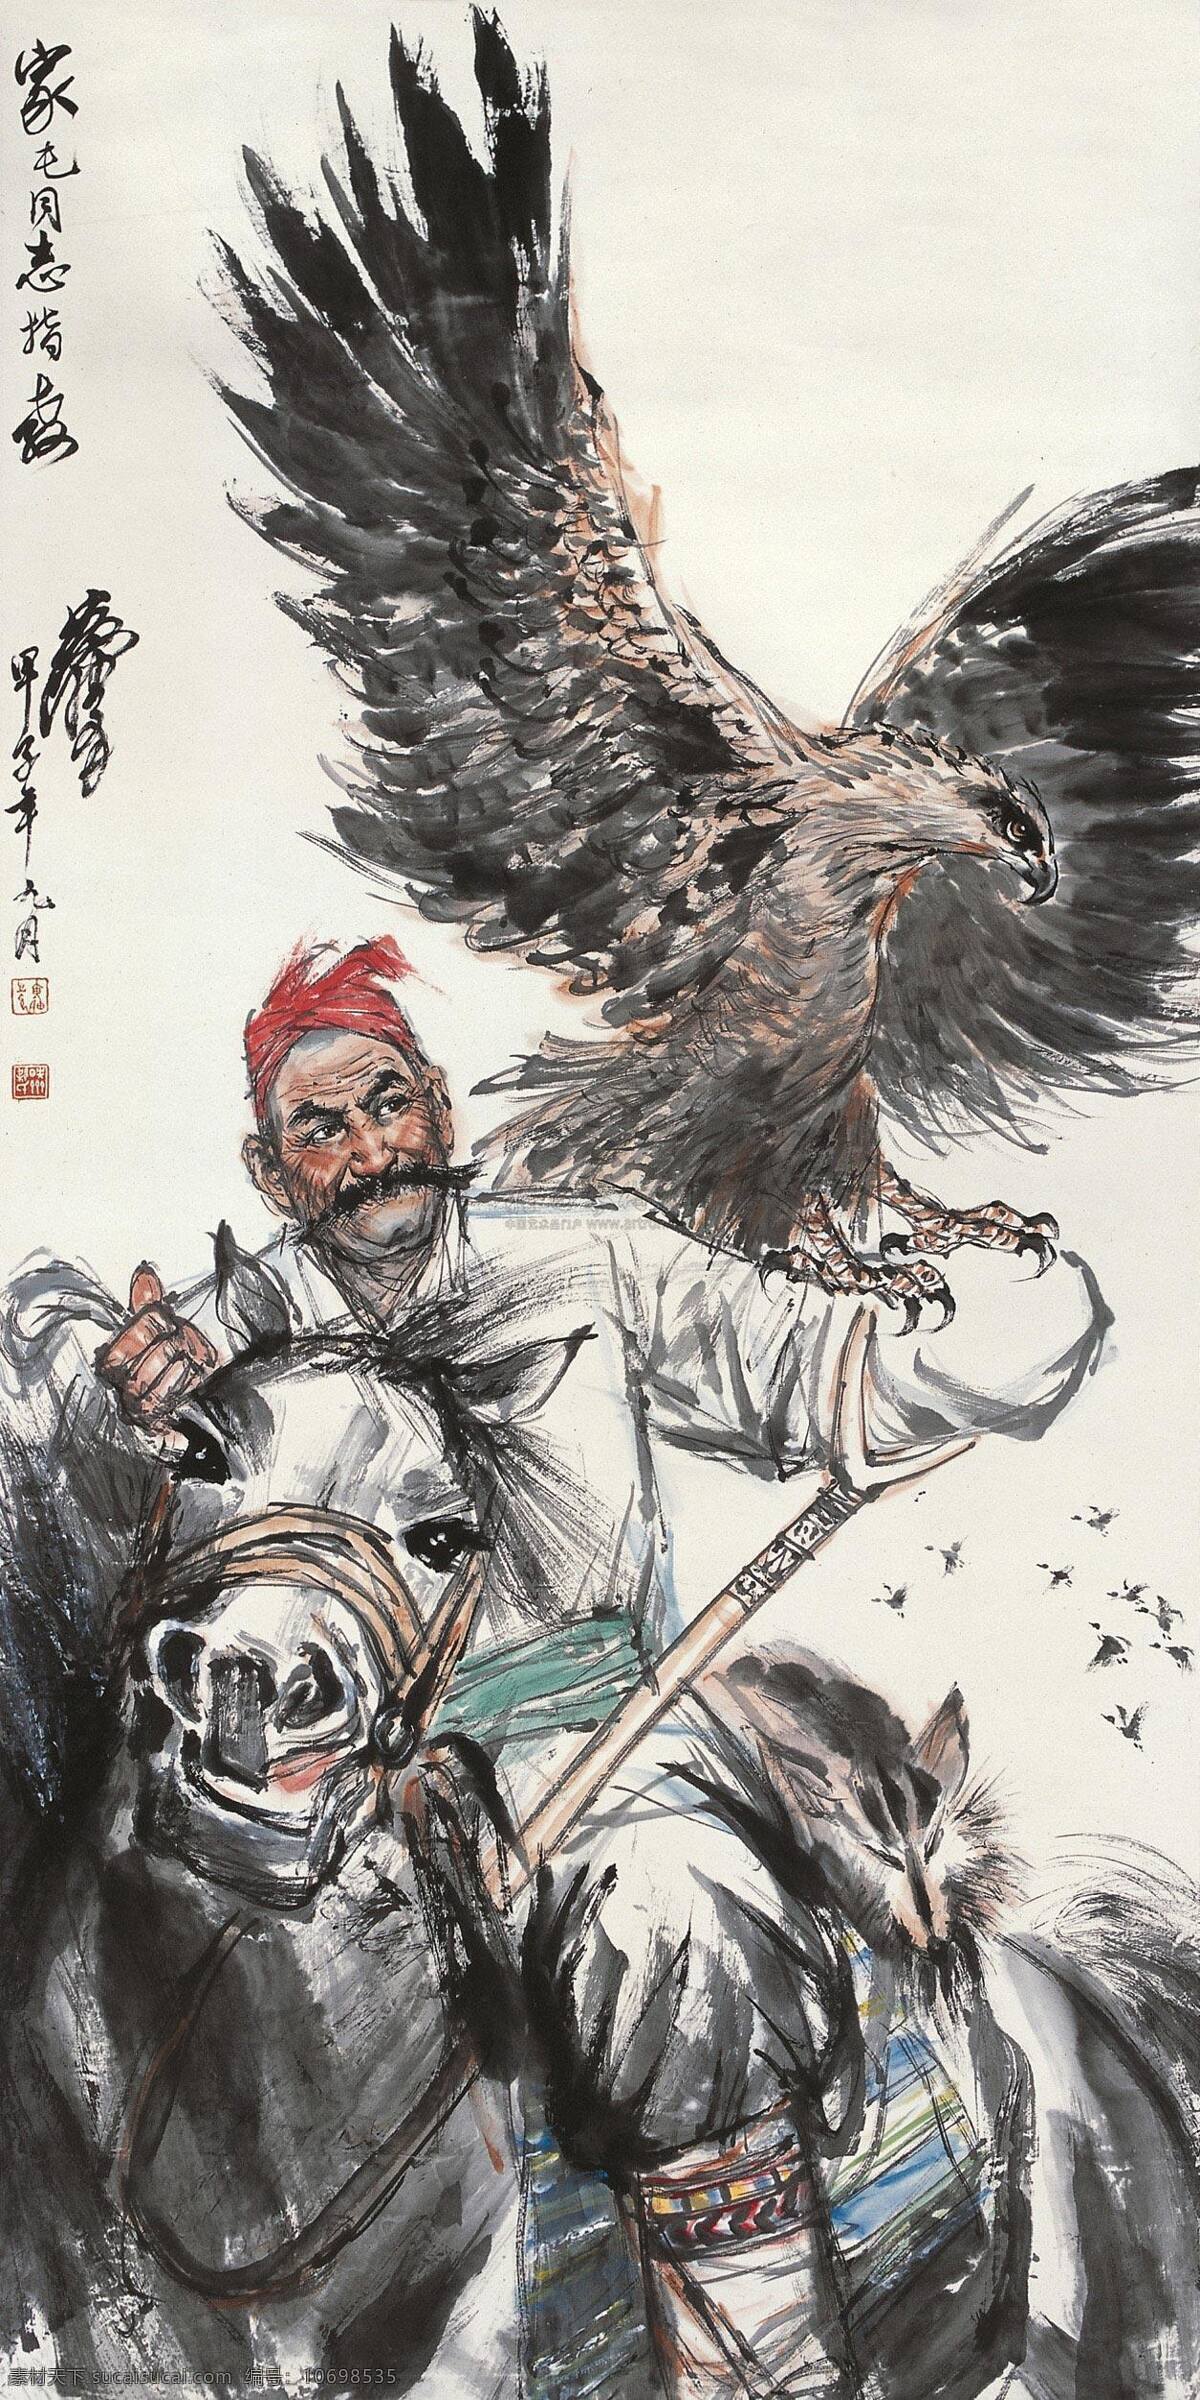 狩猎 国画 绘画书法 少数民族 文化艺术 狩猎设计素材 狩猎模板下载 猎鹰 打猎 游猎